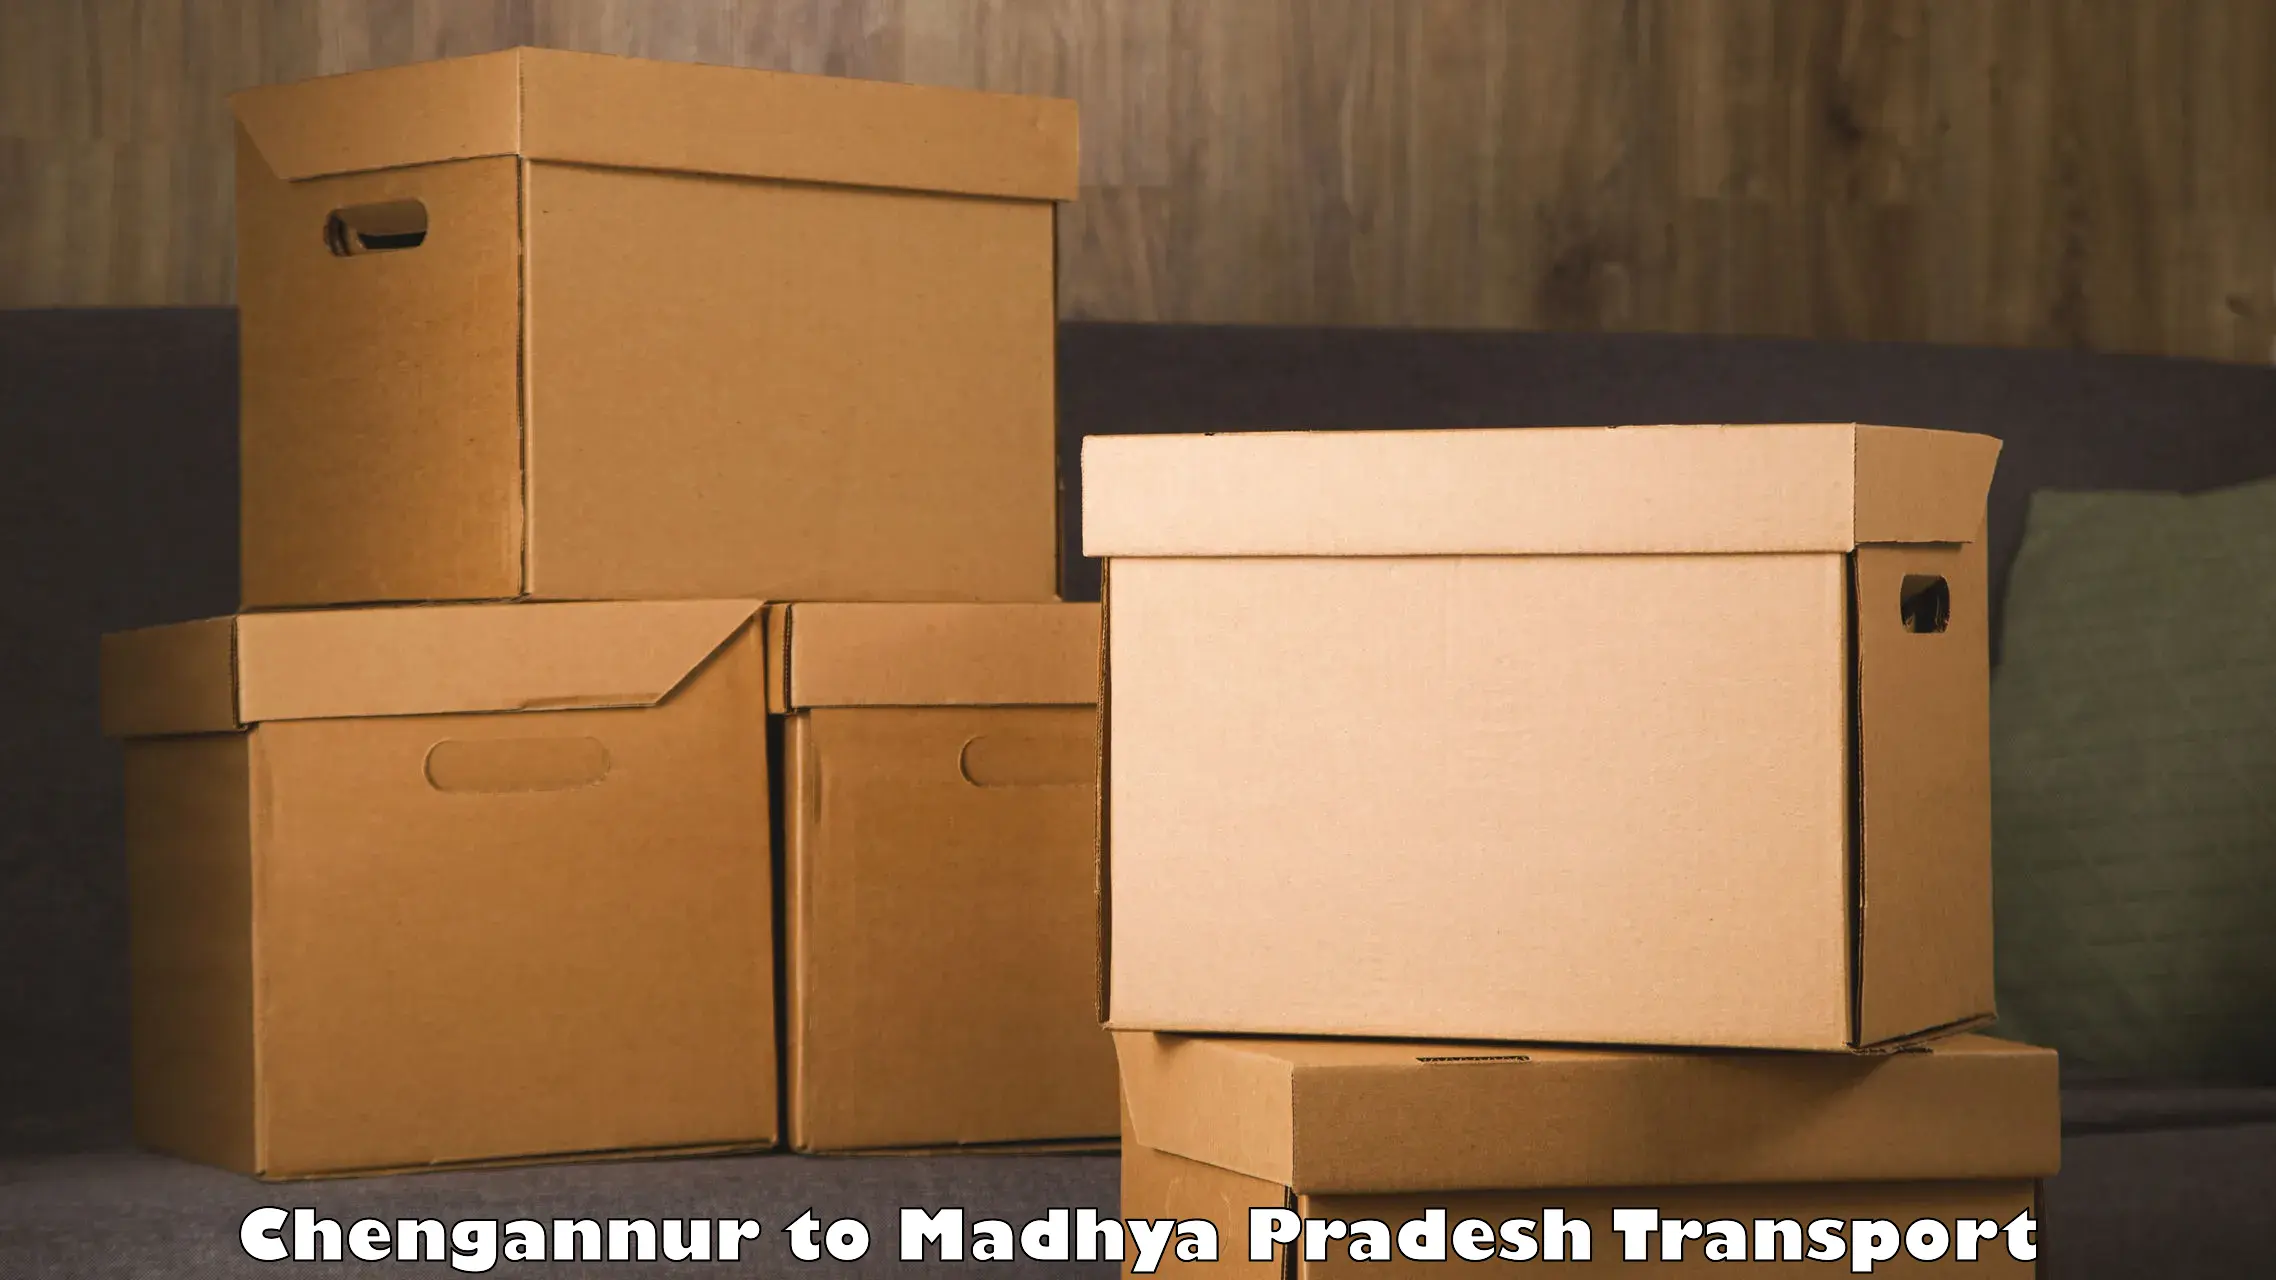 Truck transport companies in India Chengannur to Garh Rewa